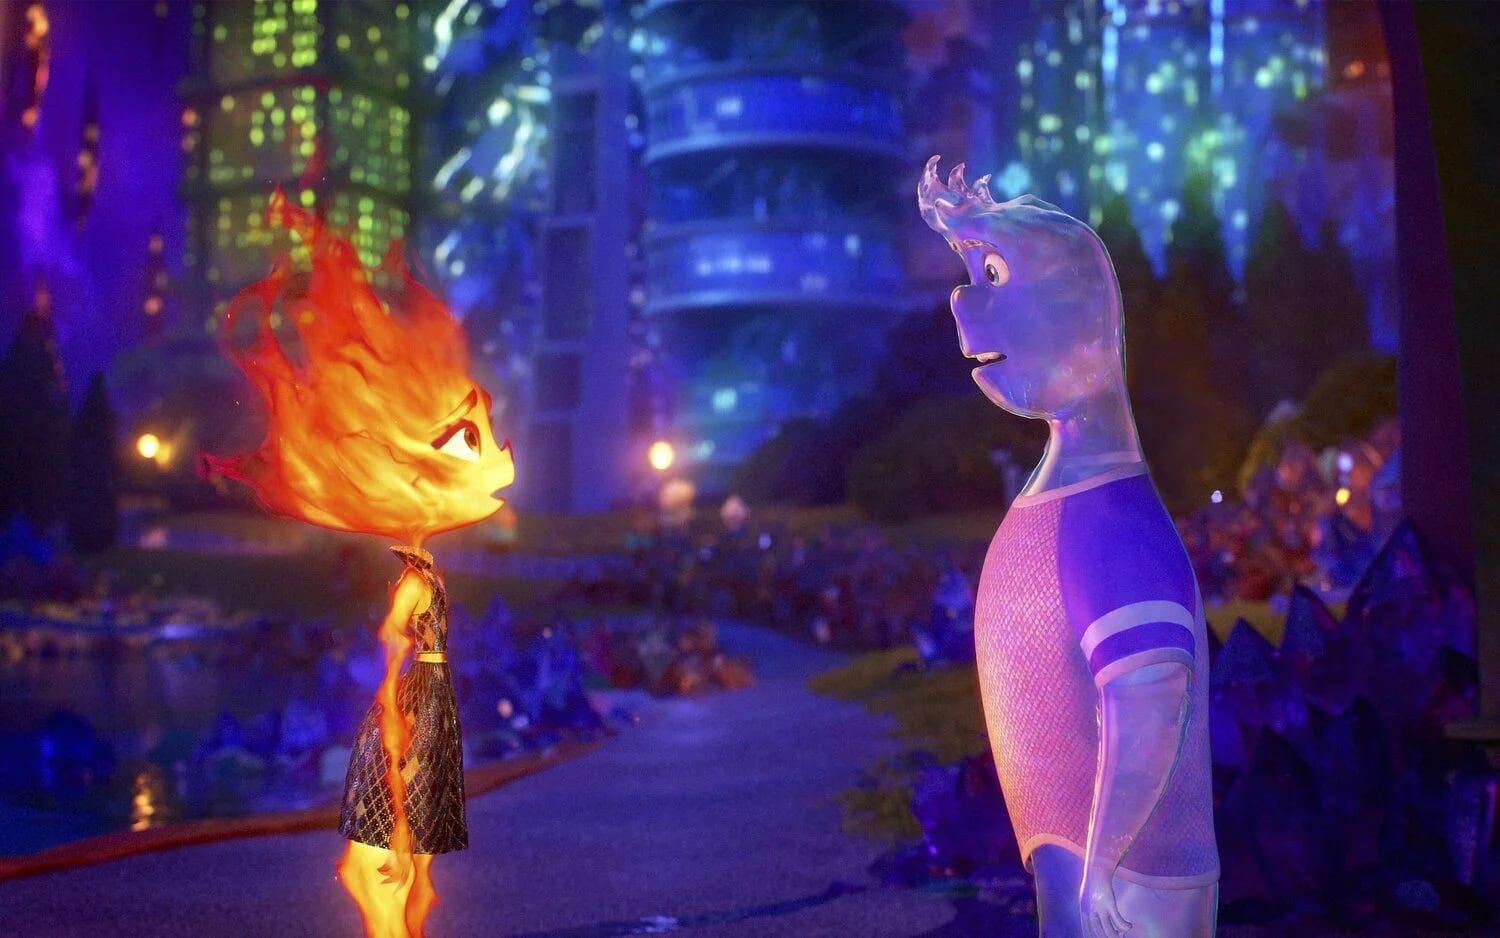 Ember y Wade, una chica de fuego y un chico de agua, ven sus vidas transformadas cuando sus caminos se entrelazan inesperadamente (Disney)